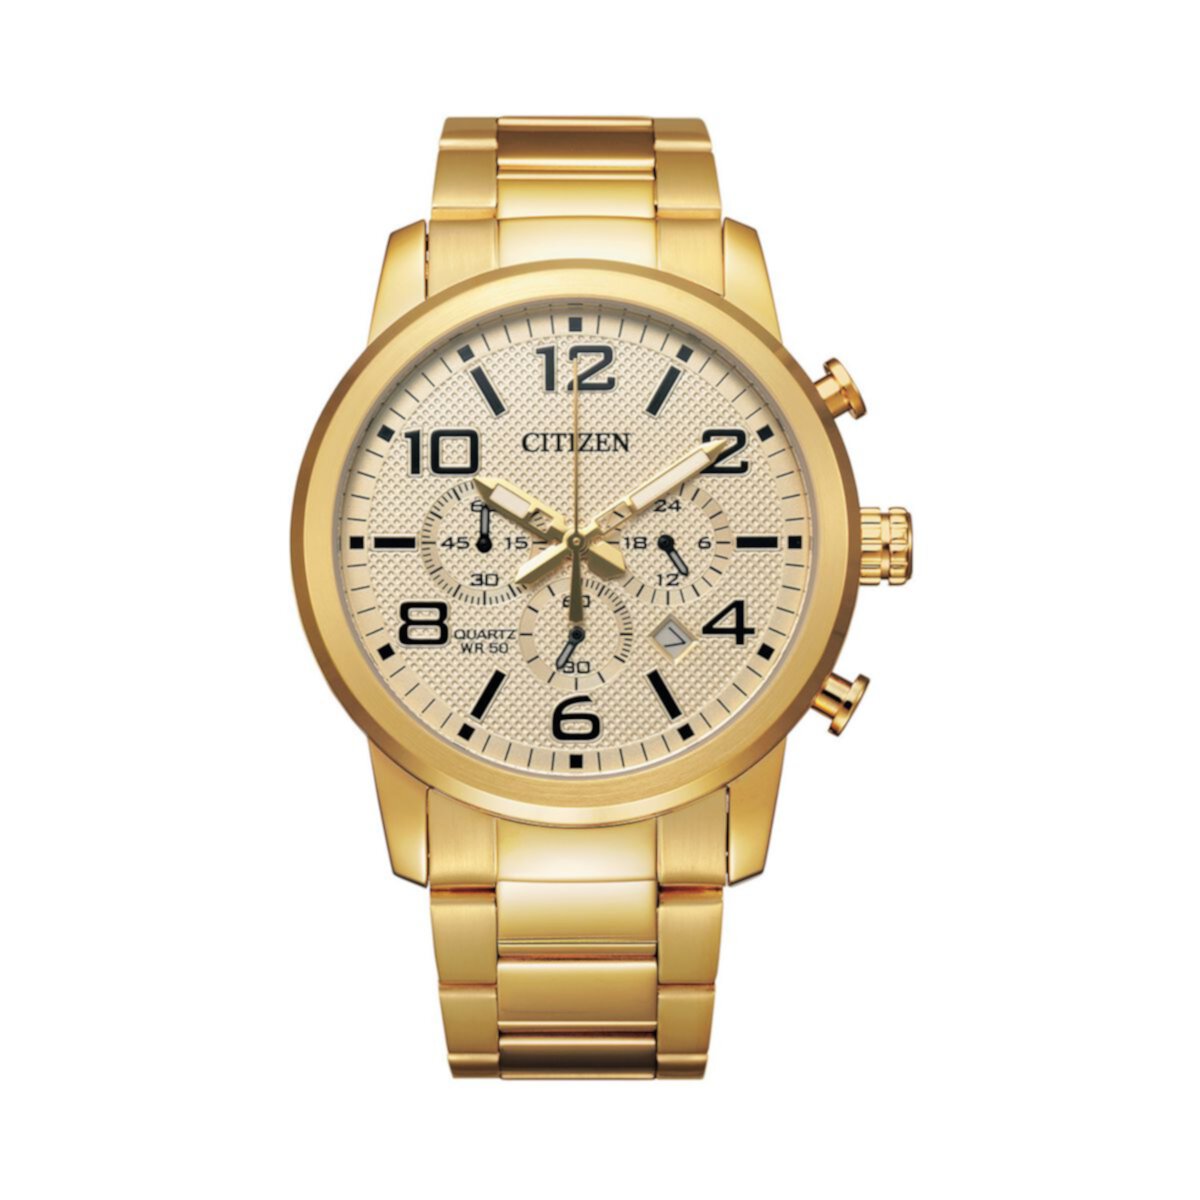 Мужские часы Citizen с хронографом из нержавеющей стали золотистого цвета - AN8052-55P Citizen